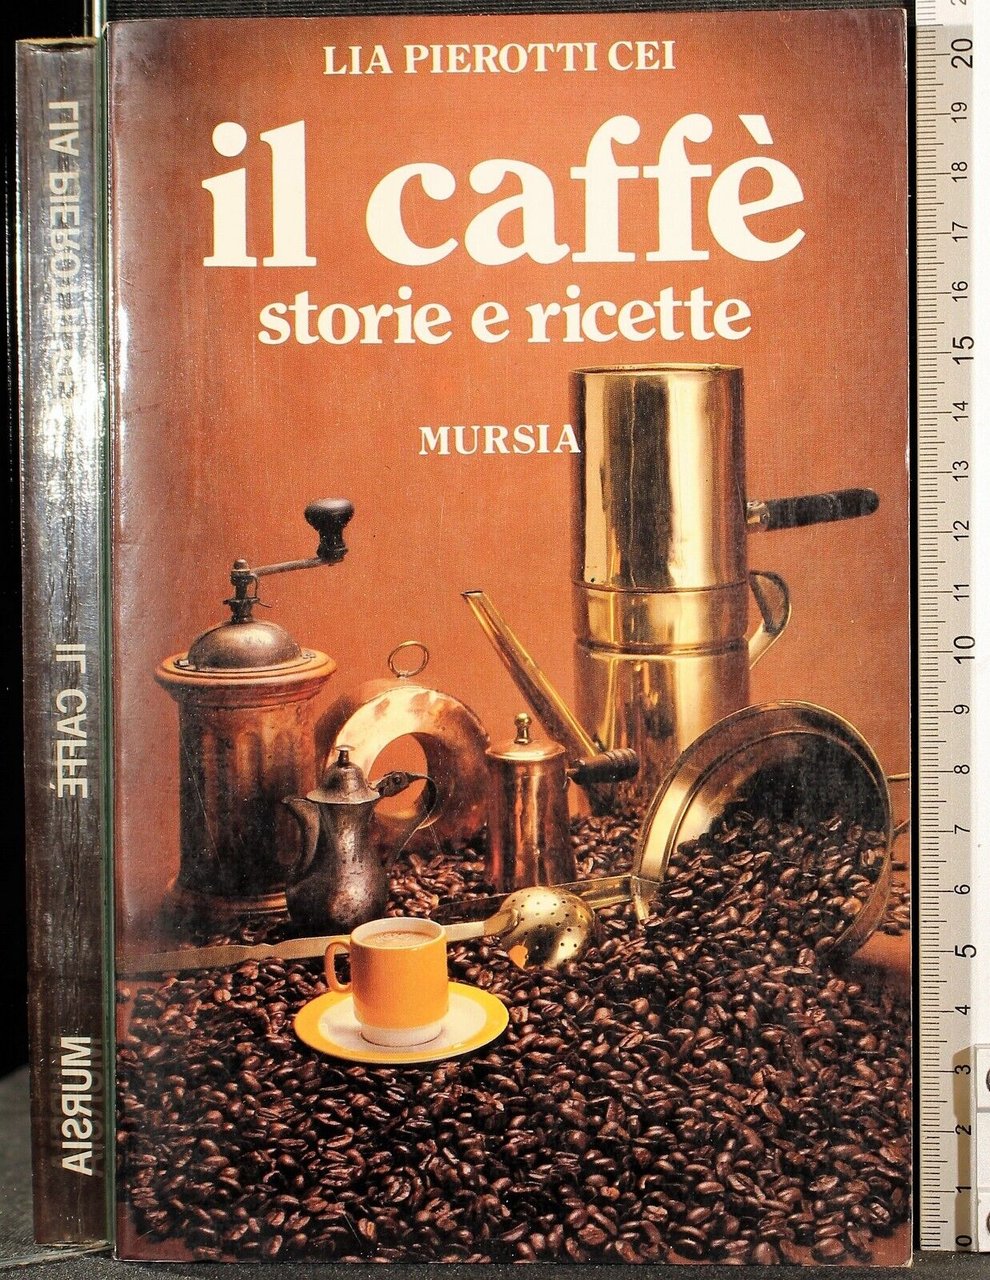 Il caffè storie e ricette